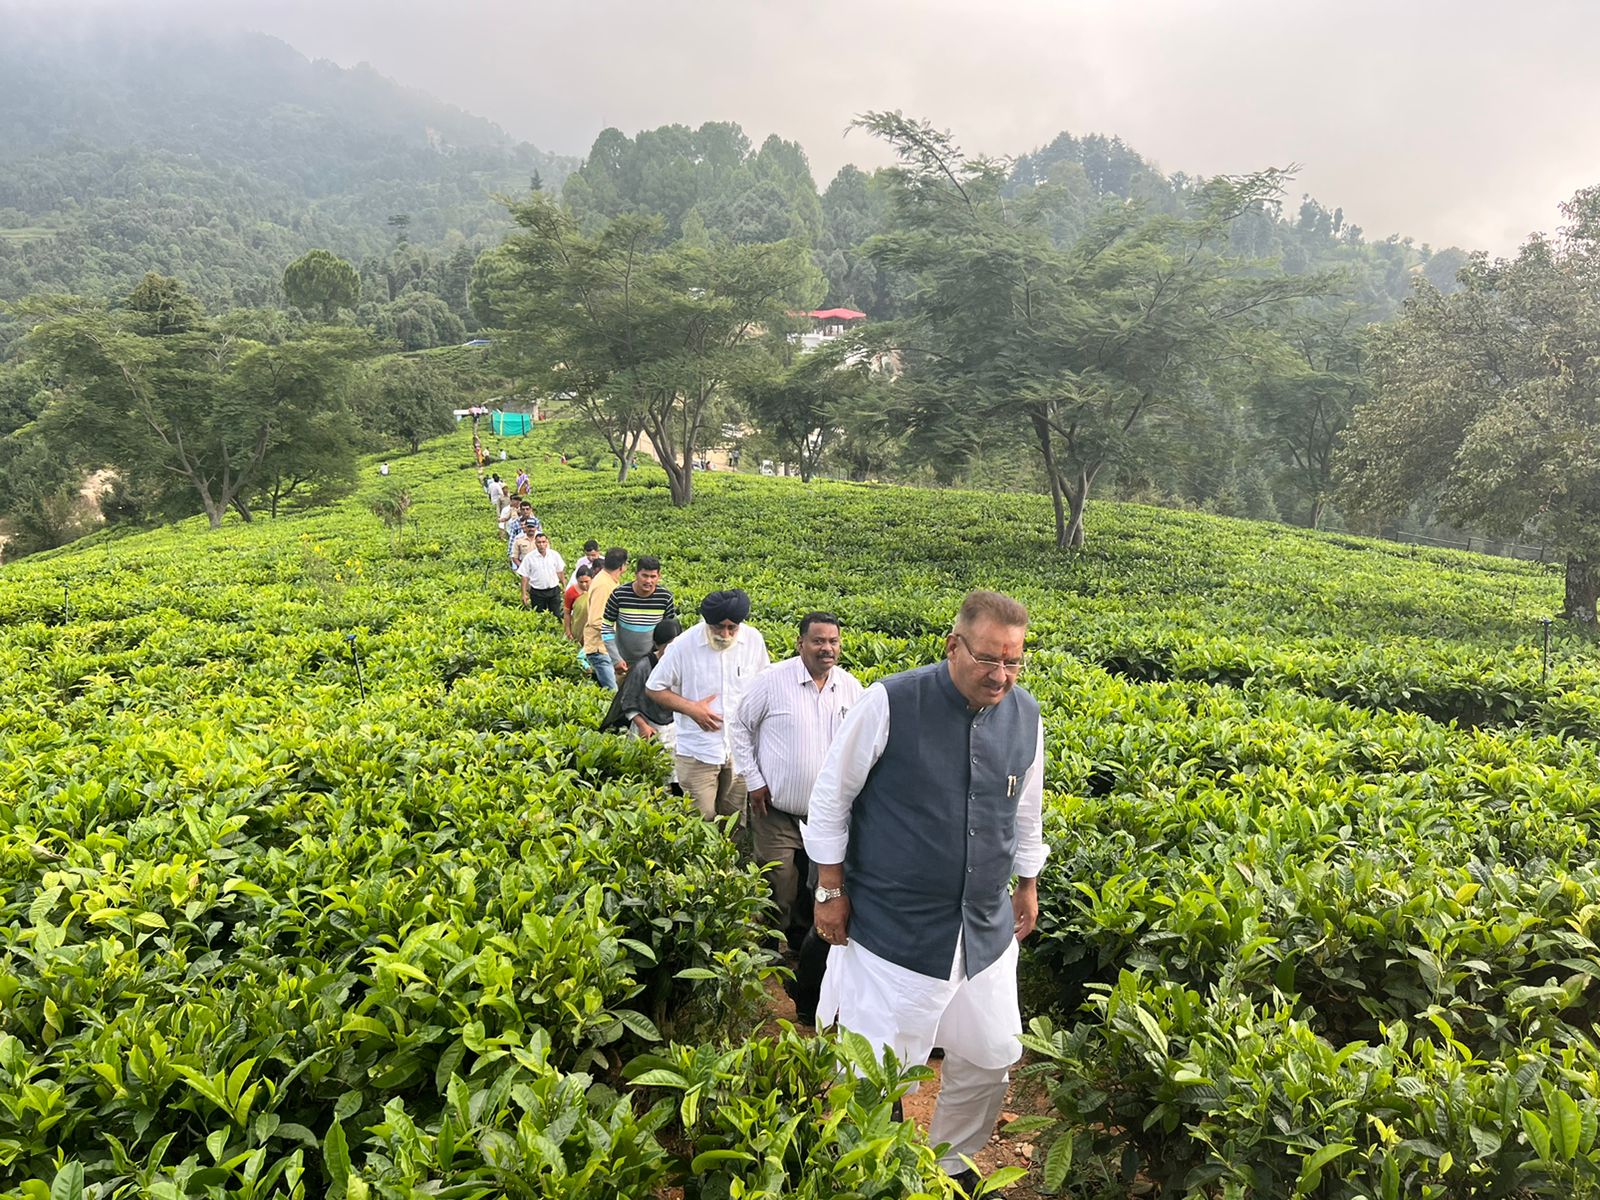 चम्पावत : चाय बागान पौधारोपण तथा पर्यटन विकास कार्यों का स्थलीय निरीक्षण करते माननीय कृषि मंत्री ने कहा कि जनपद चम्पावत एक मॉडल जिले के रूप में आगे बढ़ रहा है